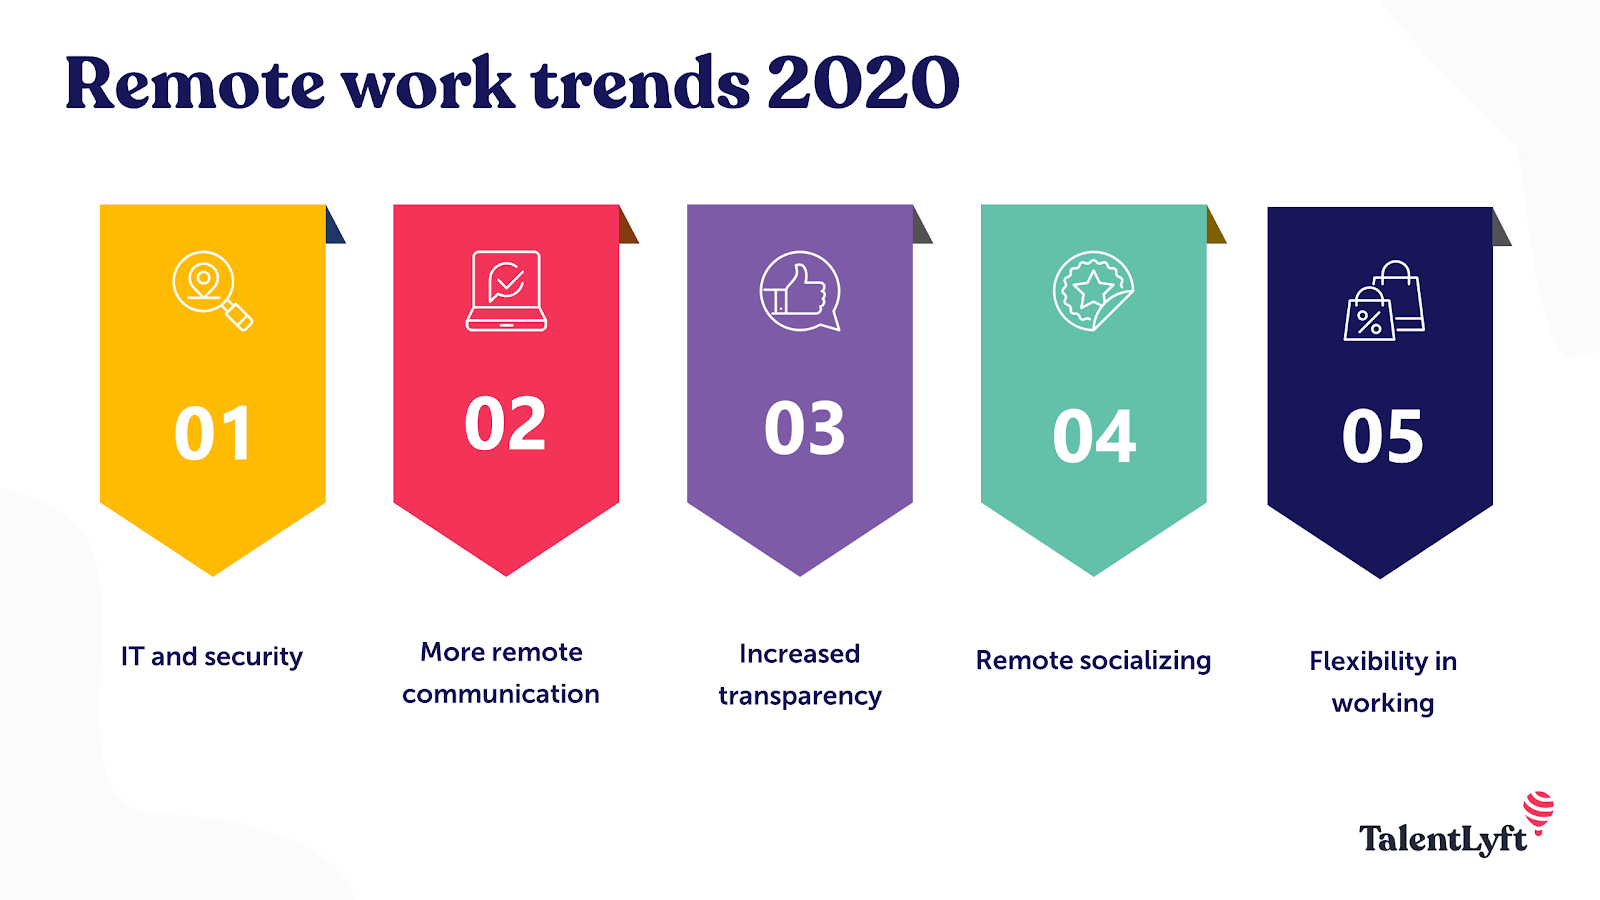 Remote work trends 2020